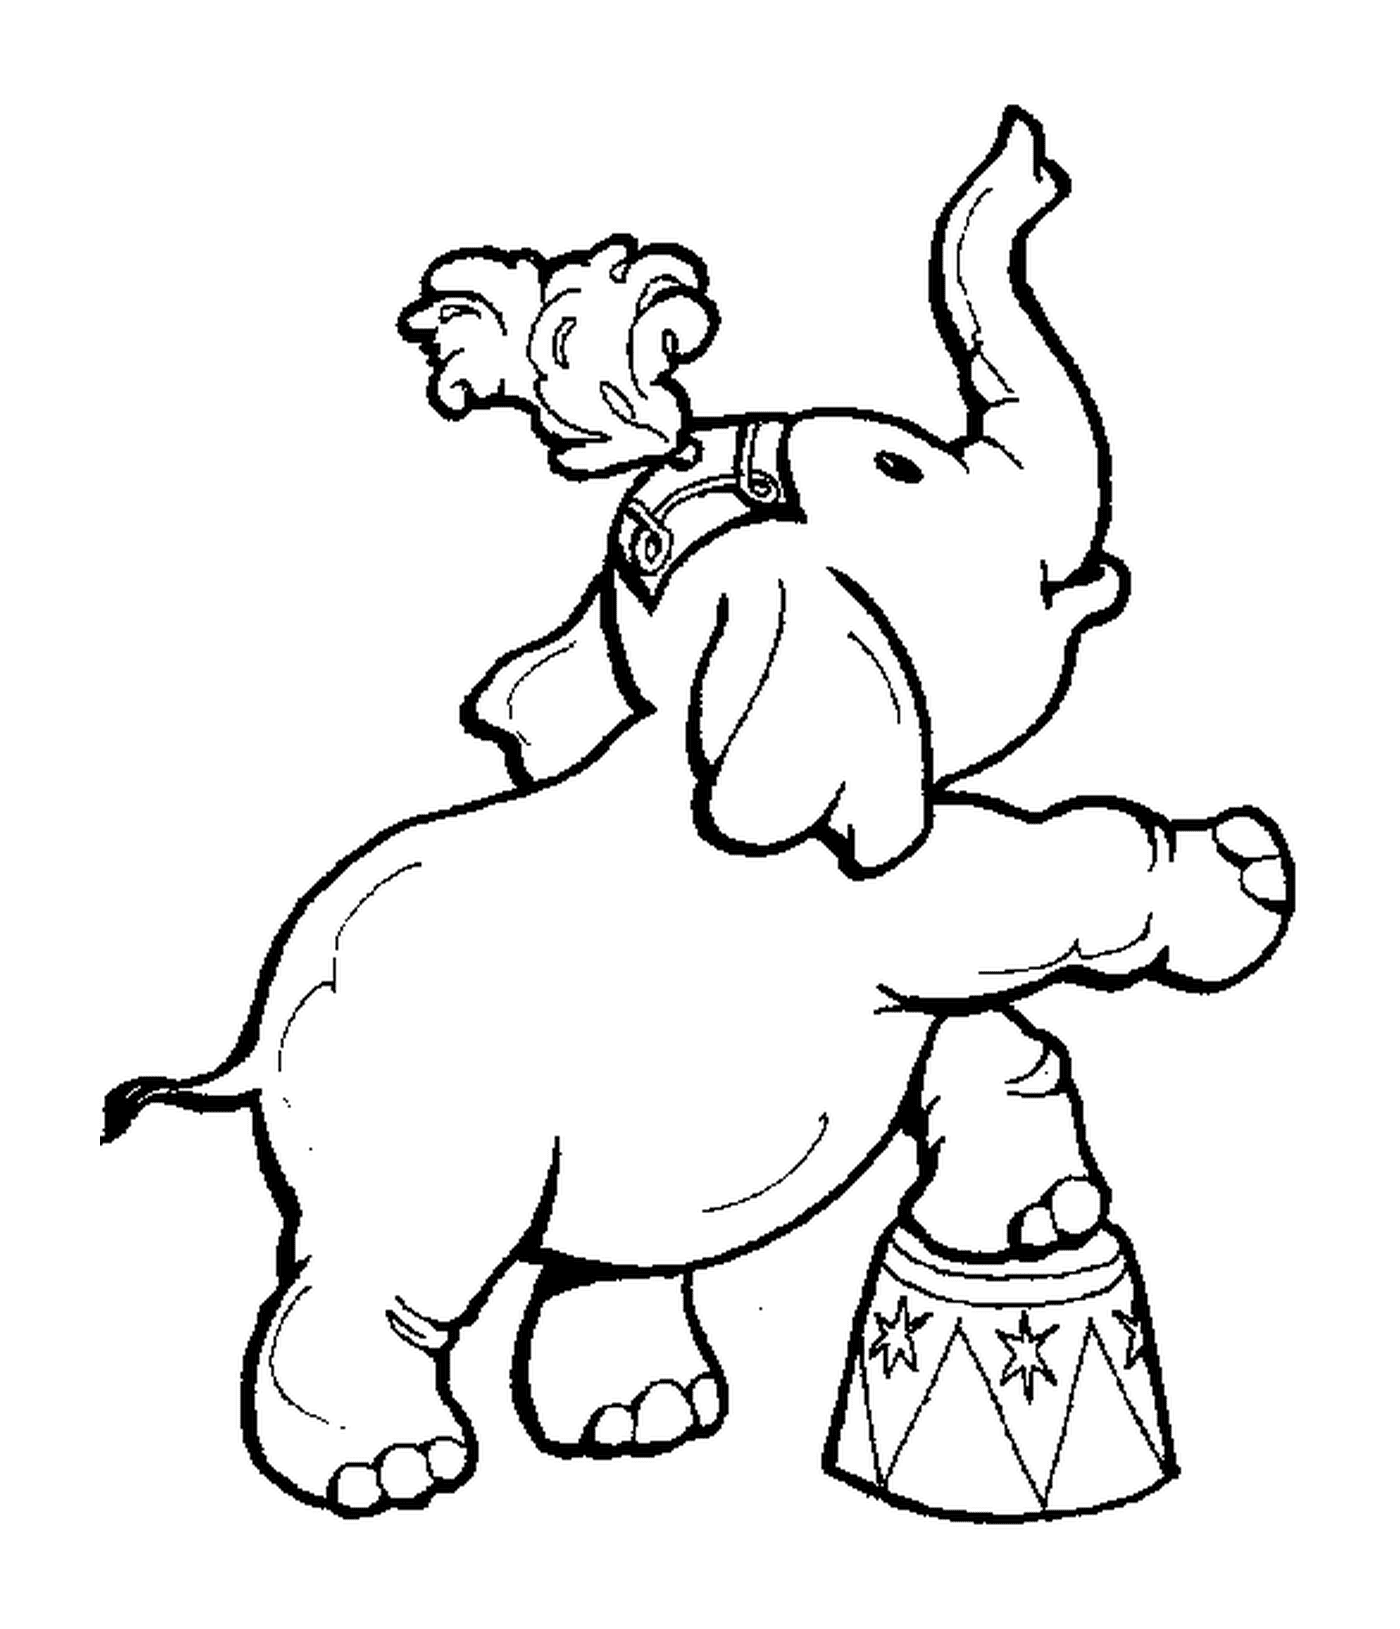  Ein Elefant steht auf einer Trommel 